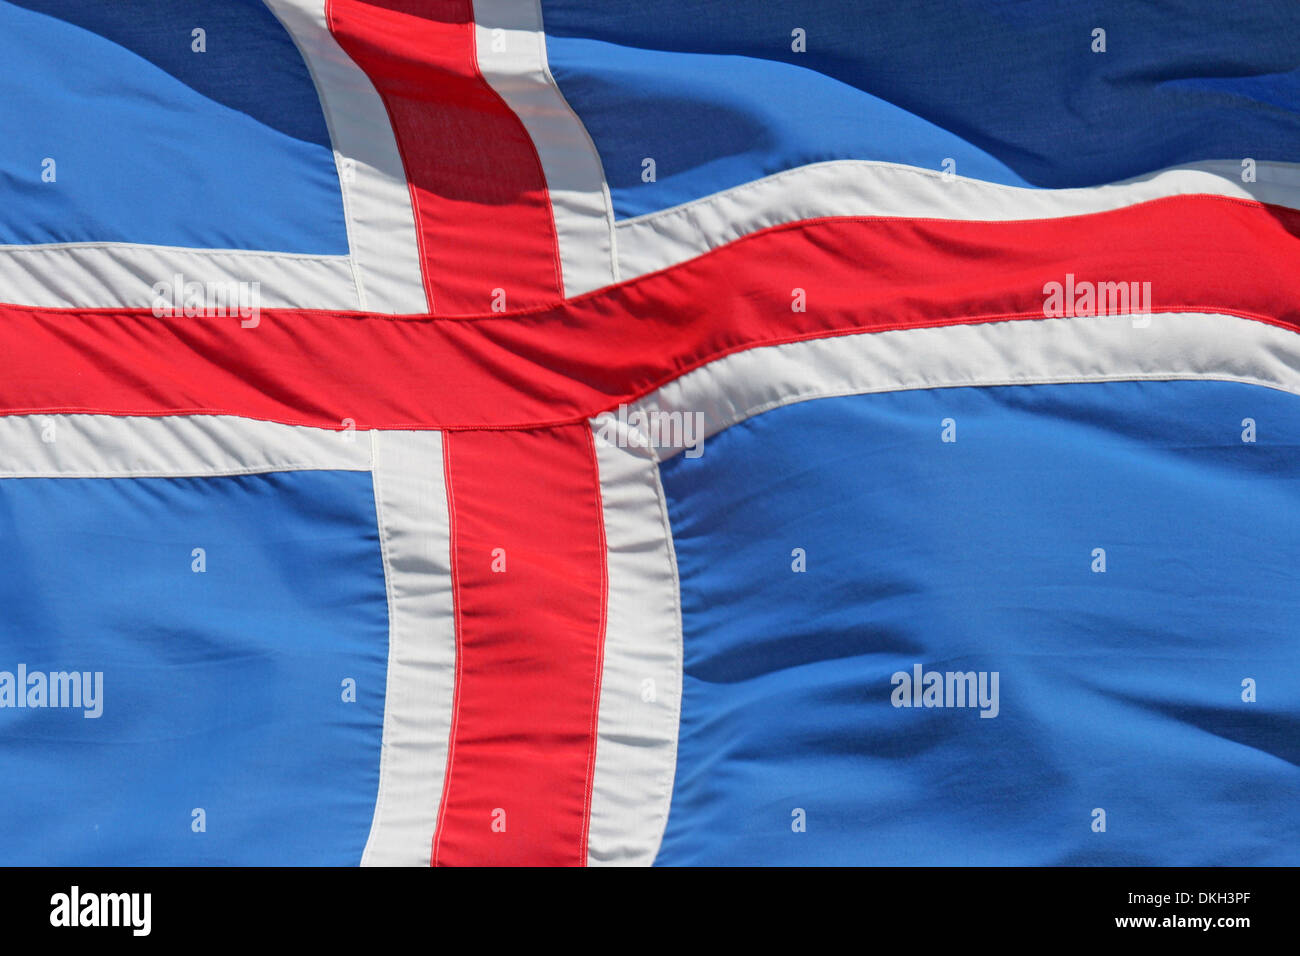 Cờ quốc gia Iceland mang đến sự tôn trọng và đẳng cấp. Với màu xanh và trắng truyền thống, hình ảnh cờ Iceland sẽ khiến bạn tự hào và cảm thấy yêu quý quê hương của mình.